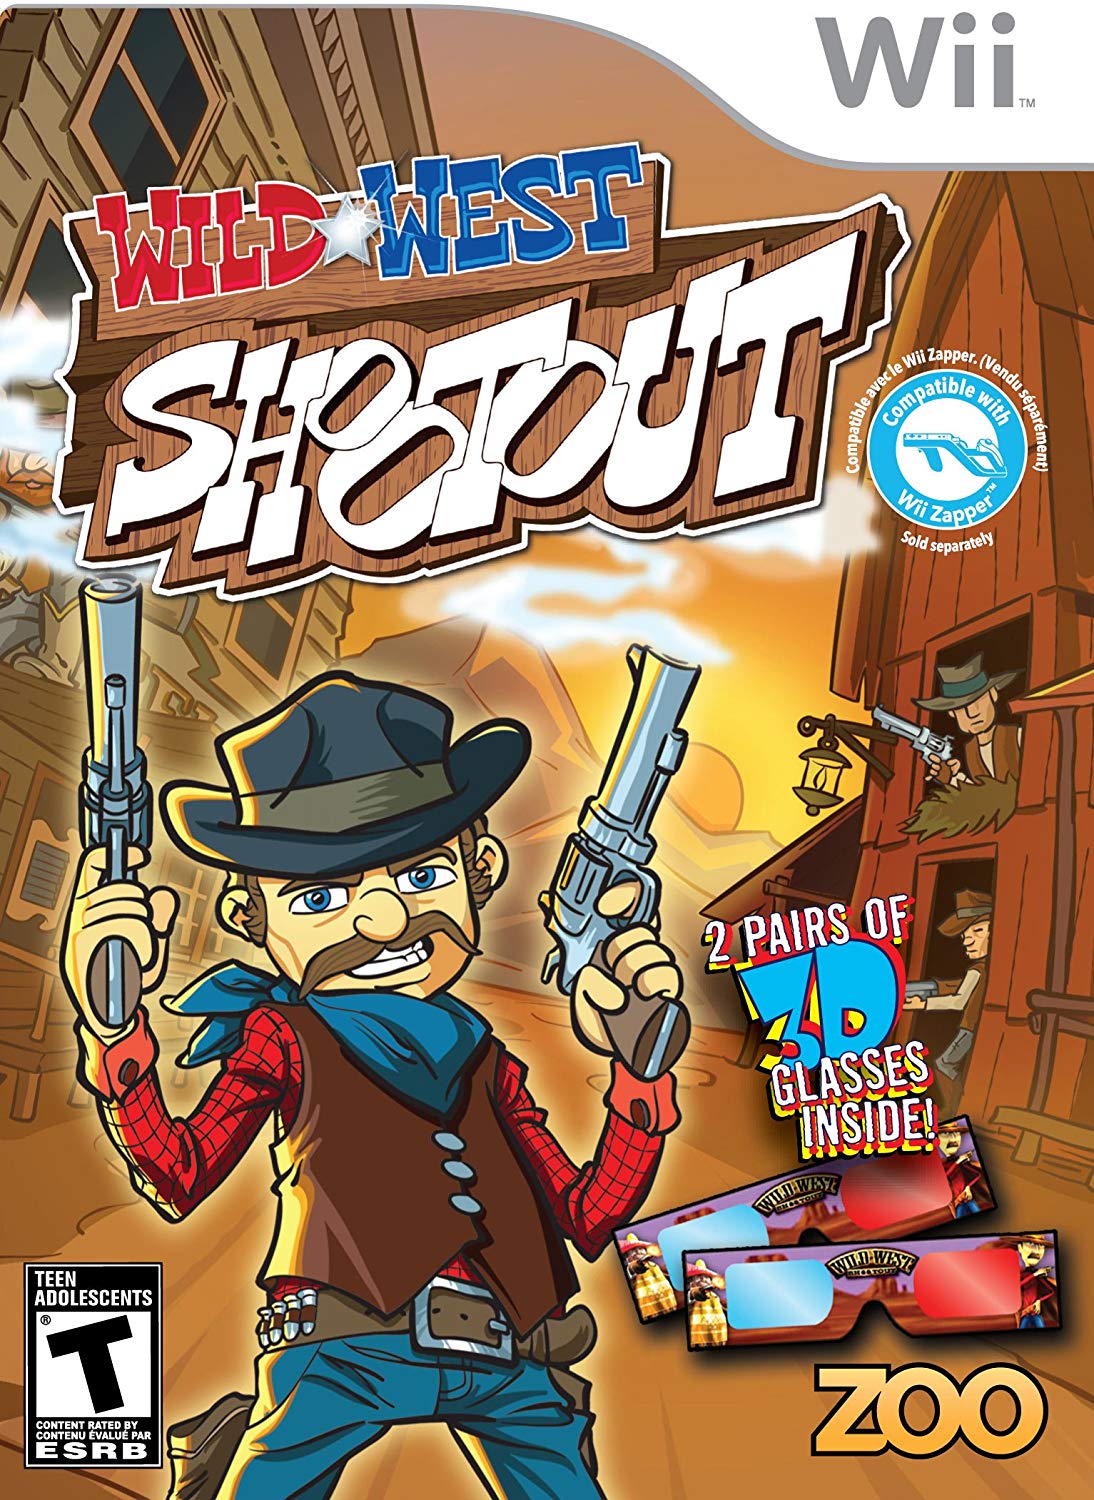 Wild West Shootout - Nintendo Wii Játékok